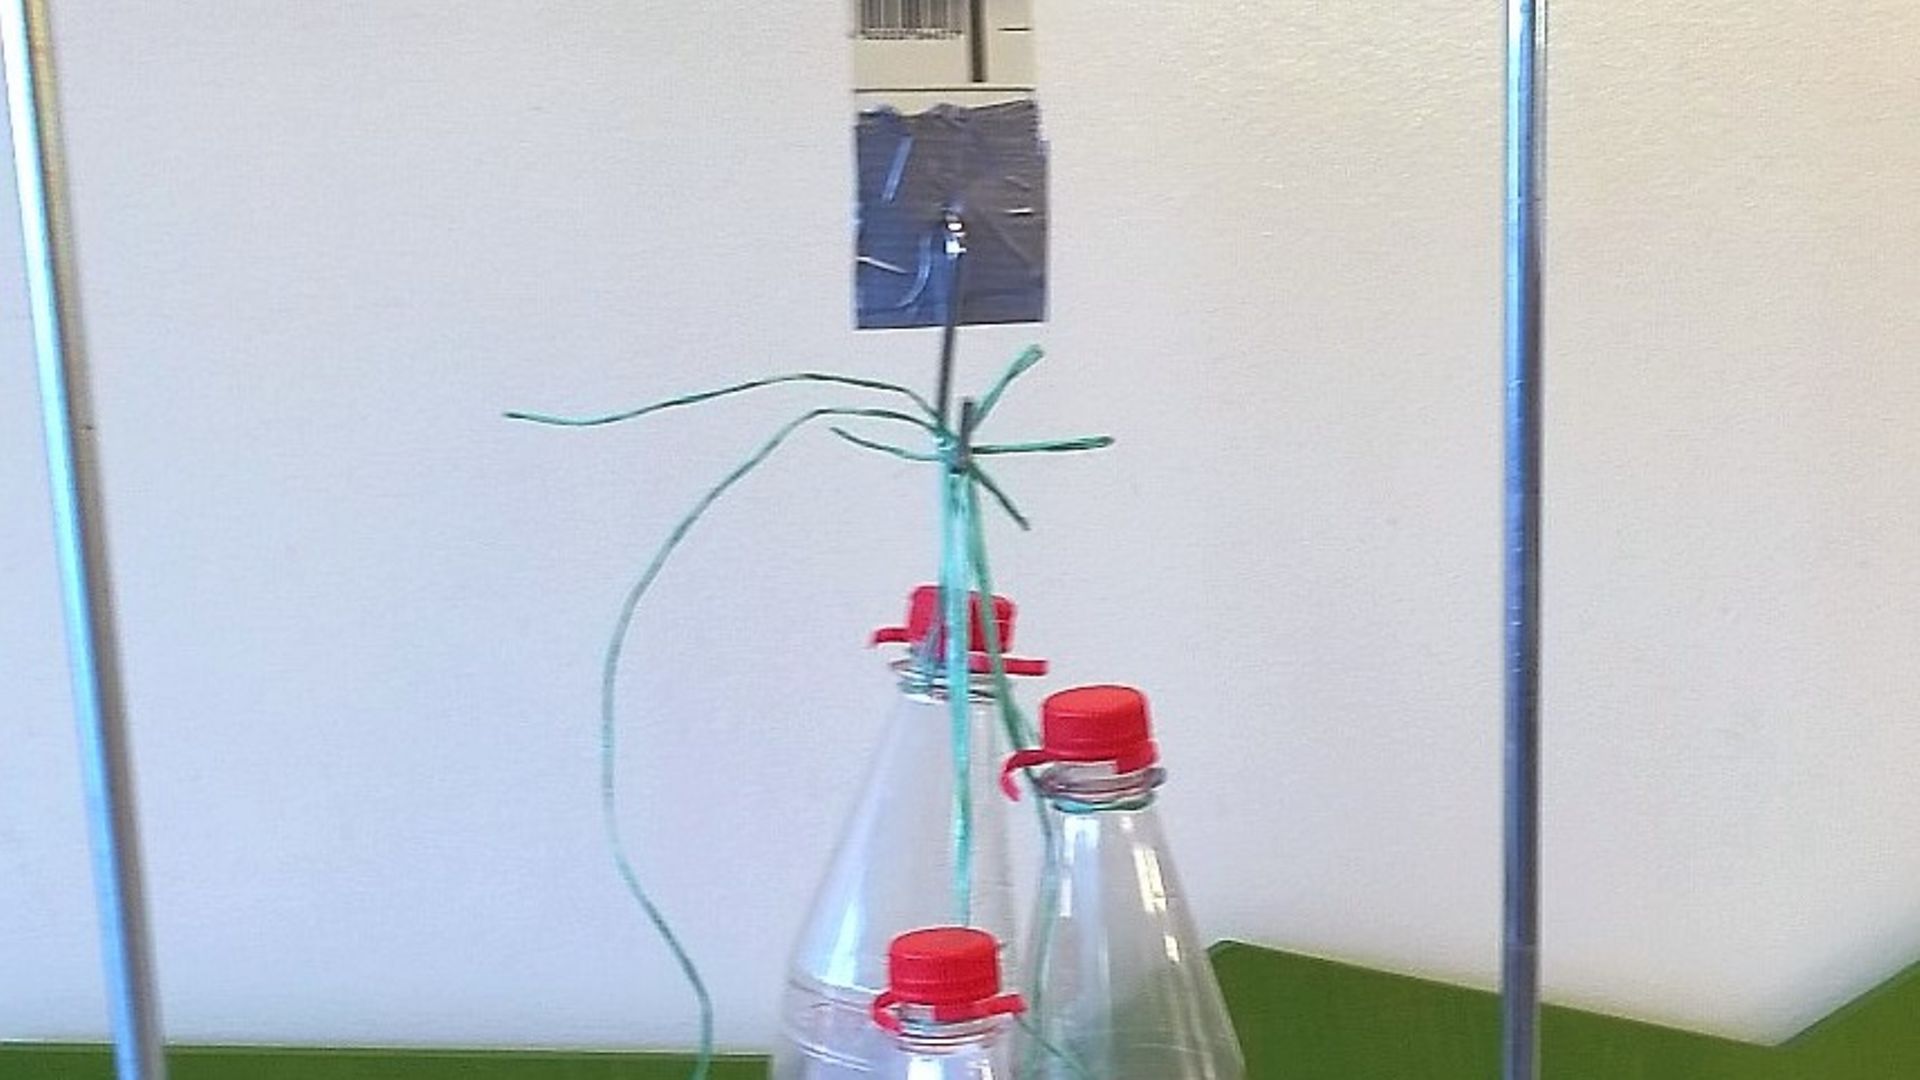 Varilla de trípode con lazo de papel colgando de ella, de la que cuelgan botellas